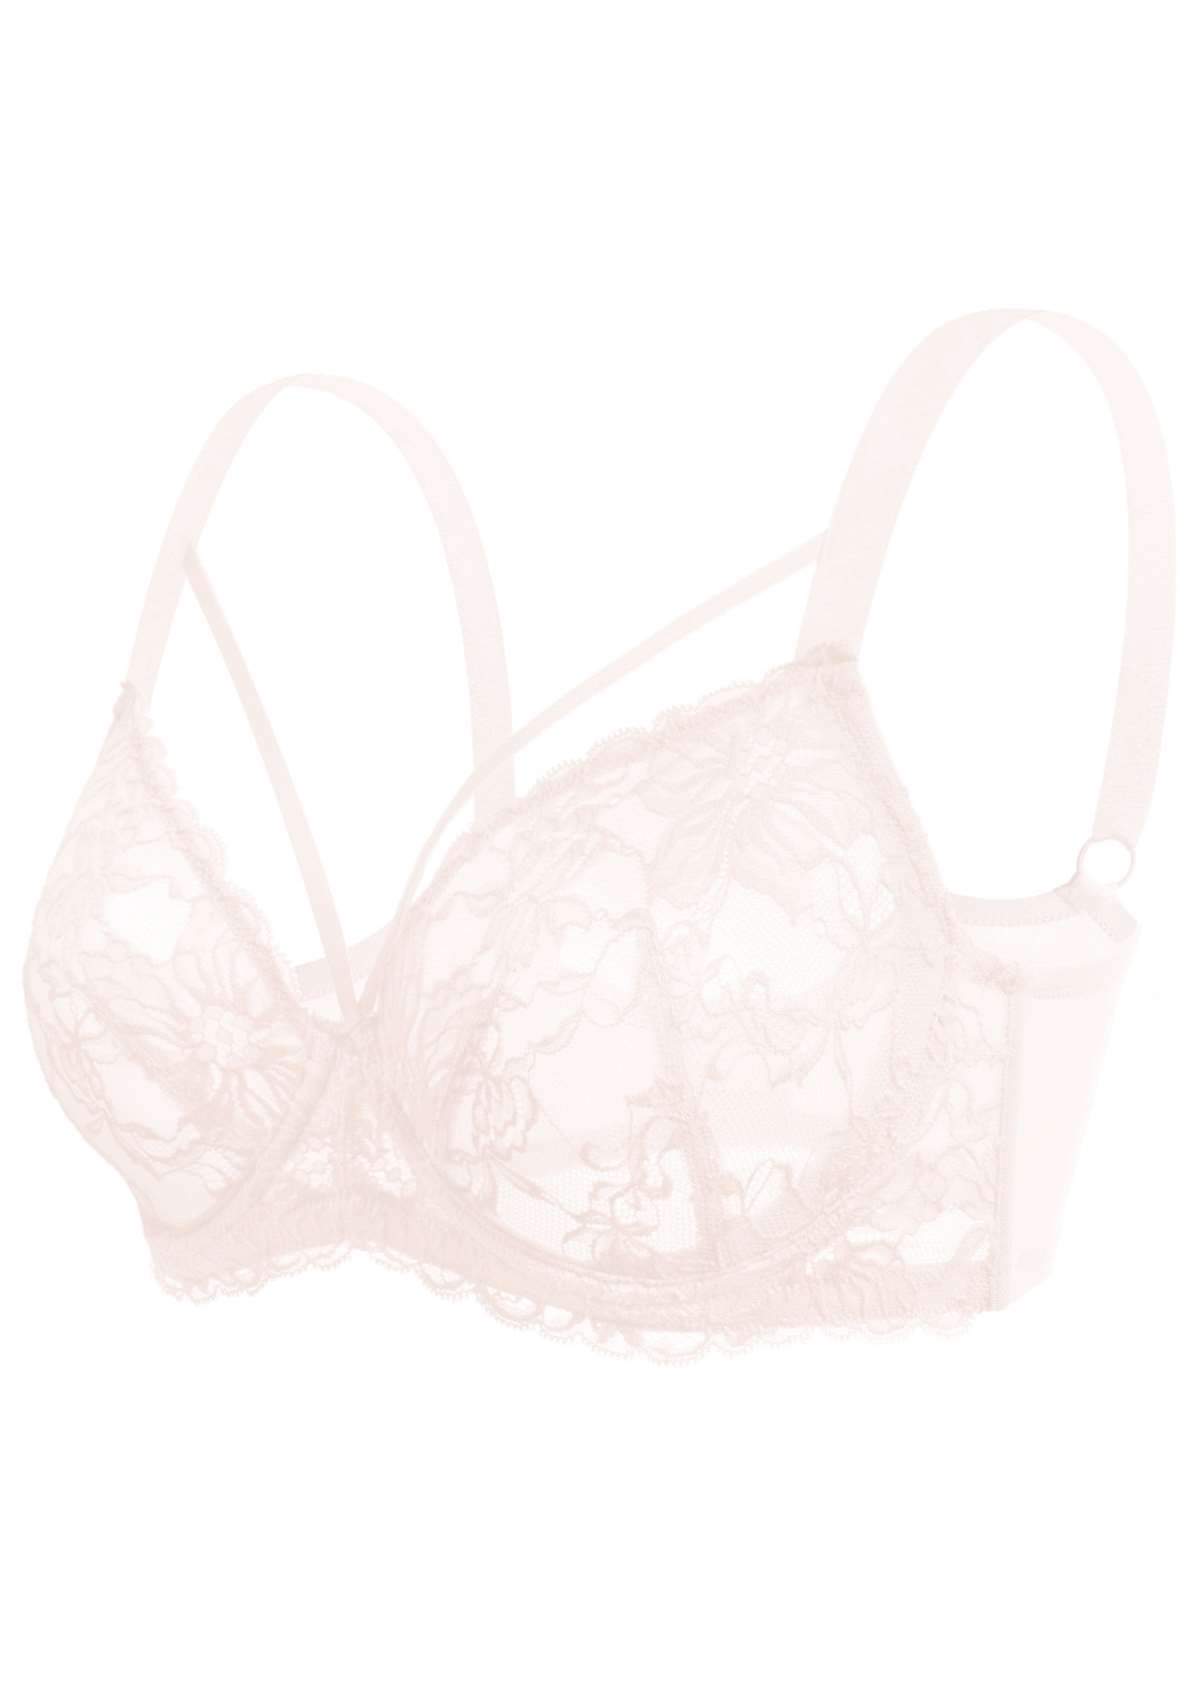 HSIA Pretty In Petals Underwire Lace Bra: No Padding, Full Cup Bra - Dusty Peach / 34 / DD/E